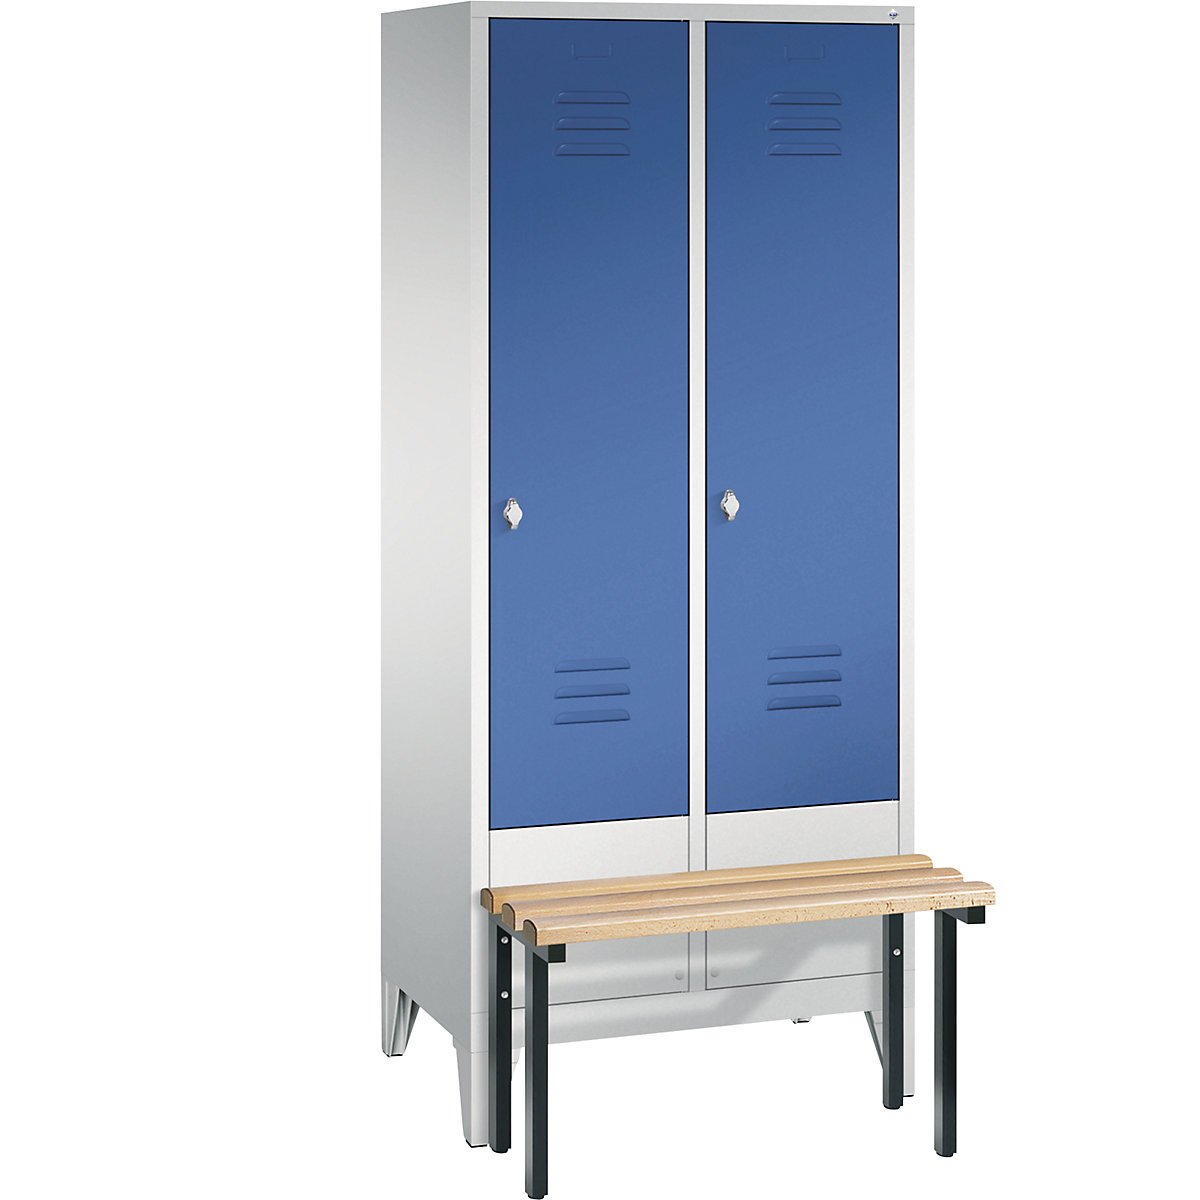 Garderobekast CLASSIC met aangebouwde zitbank – C+P, 2 afdelingen, afdelingsbreedte 400 mm, lichtgrijs/gentiaanblauw-9